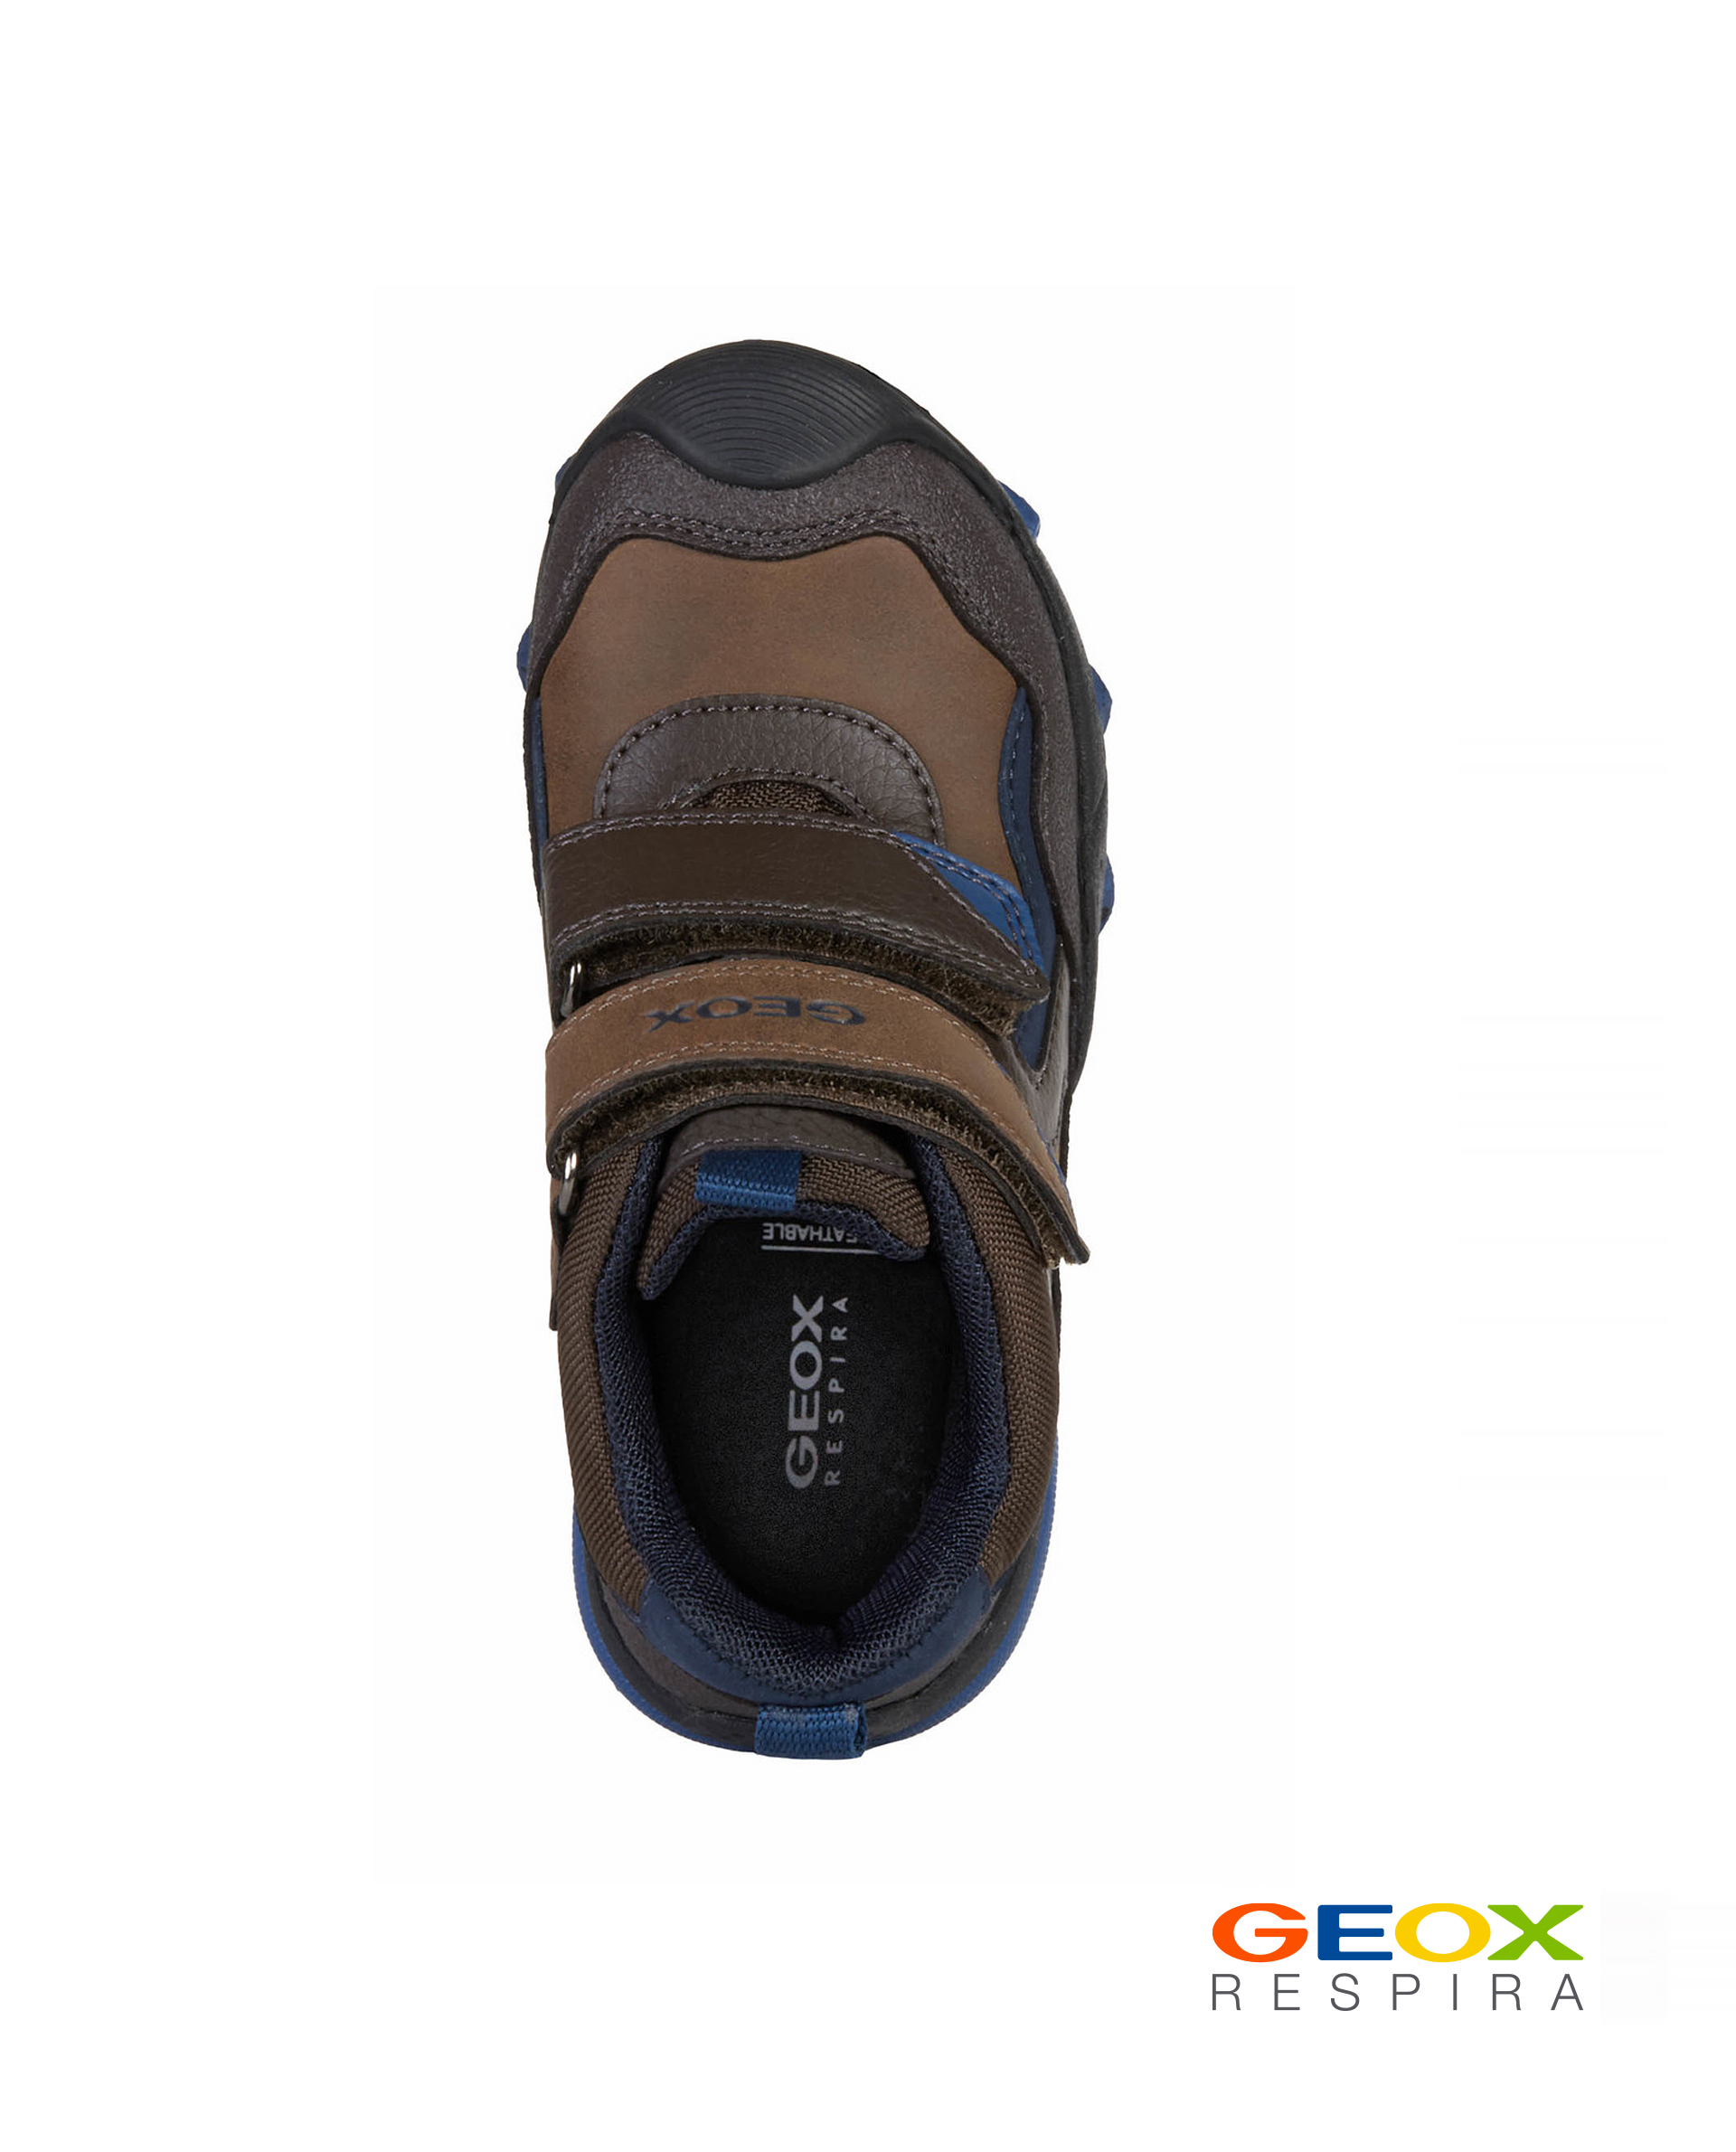 Коричневые ботинки Geox J049WBLME50C6402, размер 40, цвет коричневый - фото 4